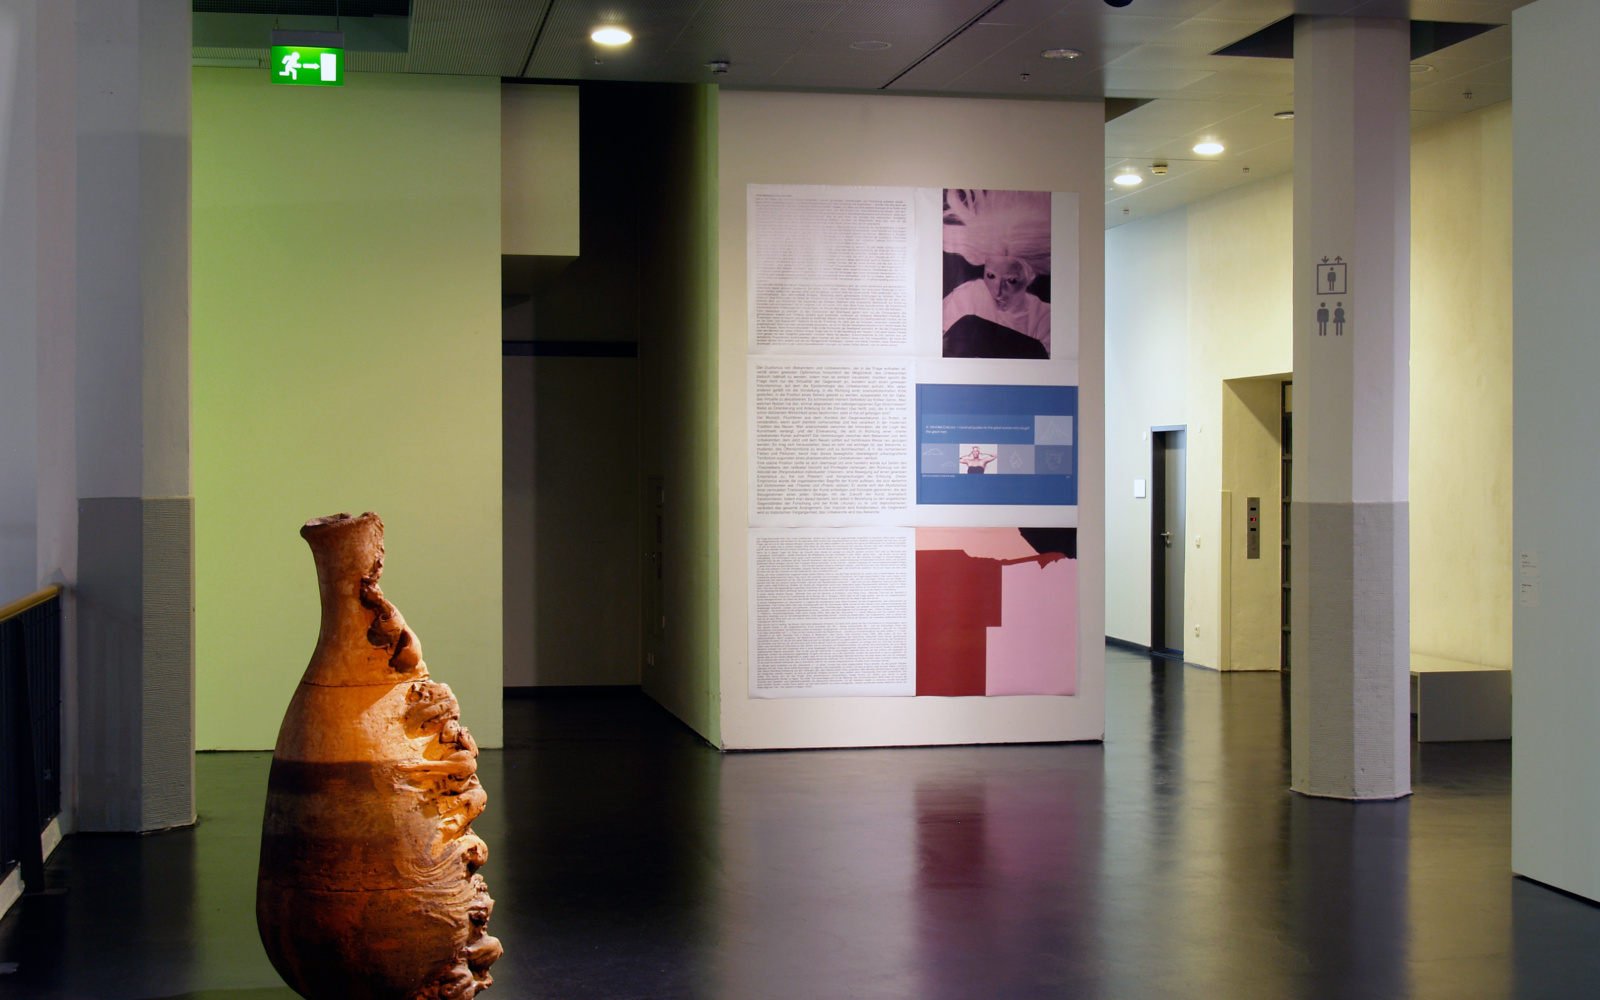 Exhibition view "Jochen Gerz: Anthologiy of Art"